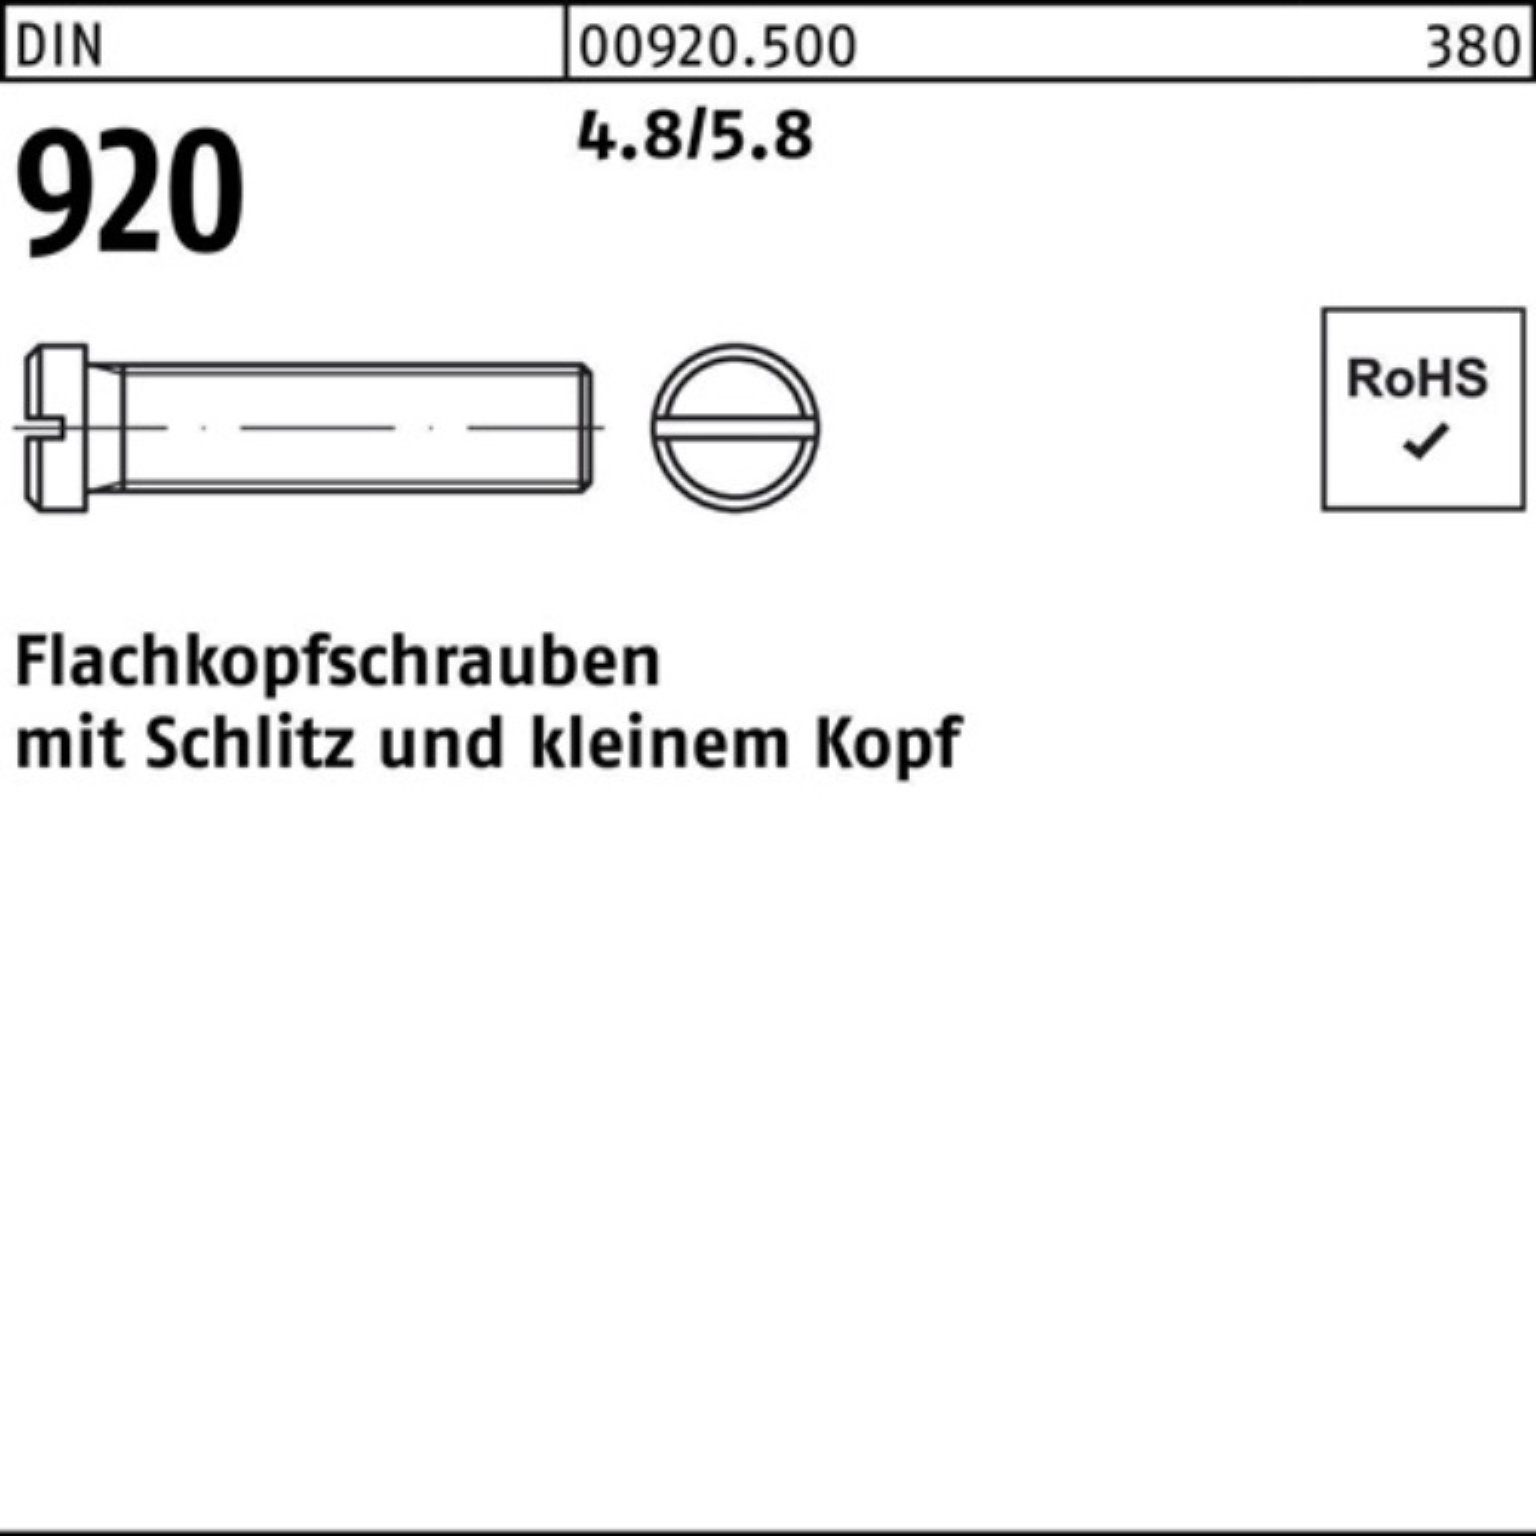 Reyher Schraube 100er DIN Schlitz Flachkopfschraube 4.8/5.8 Pack Stück 920 100 3 M3x